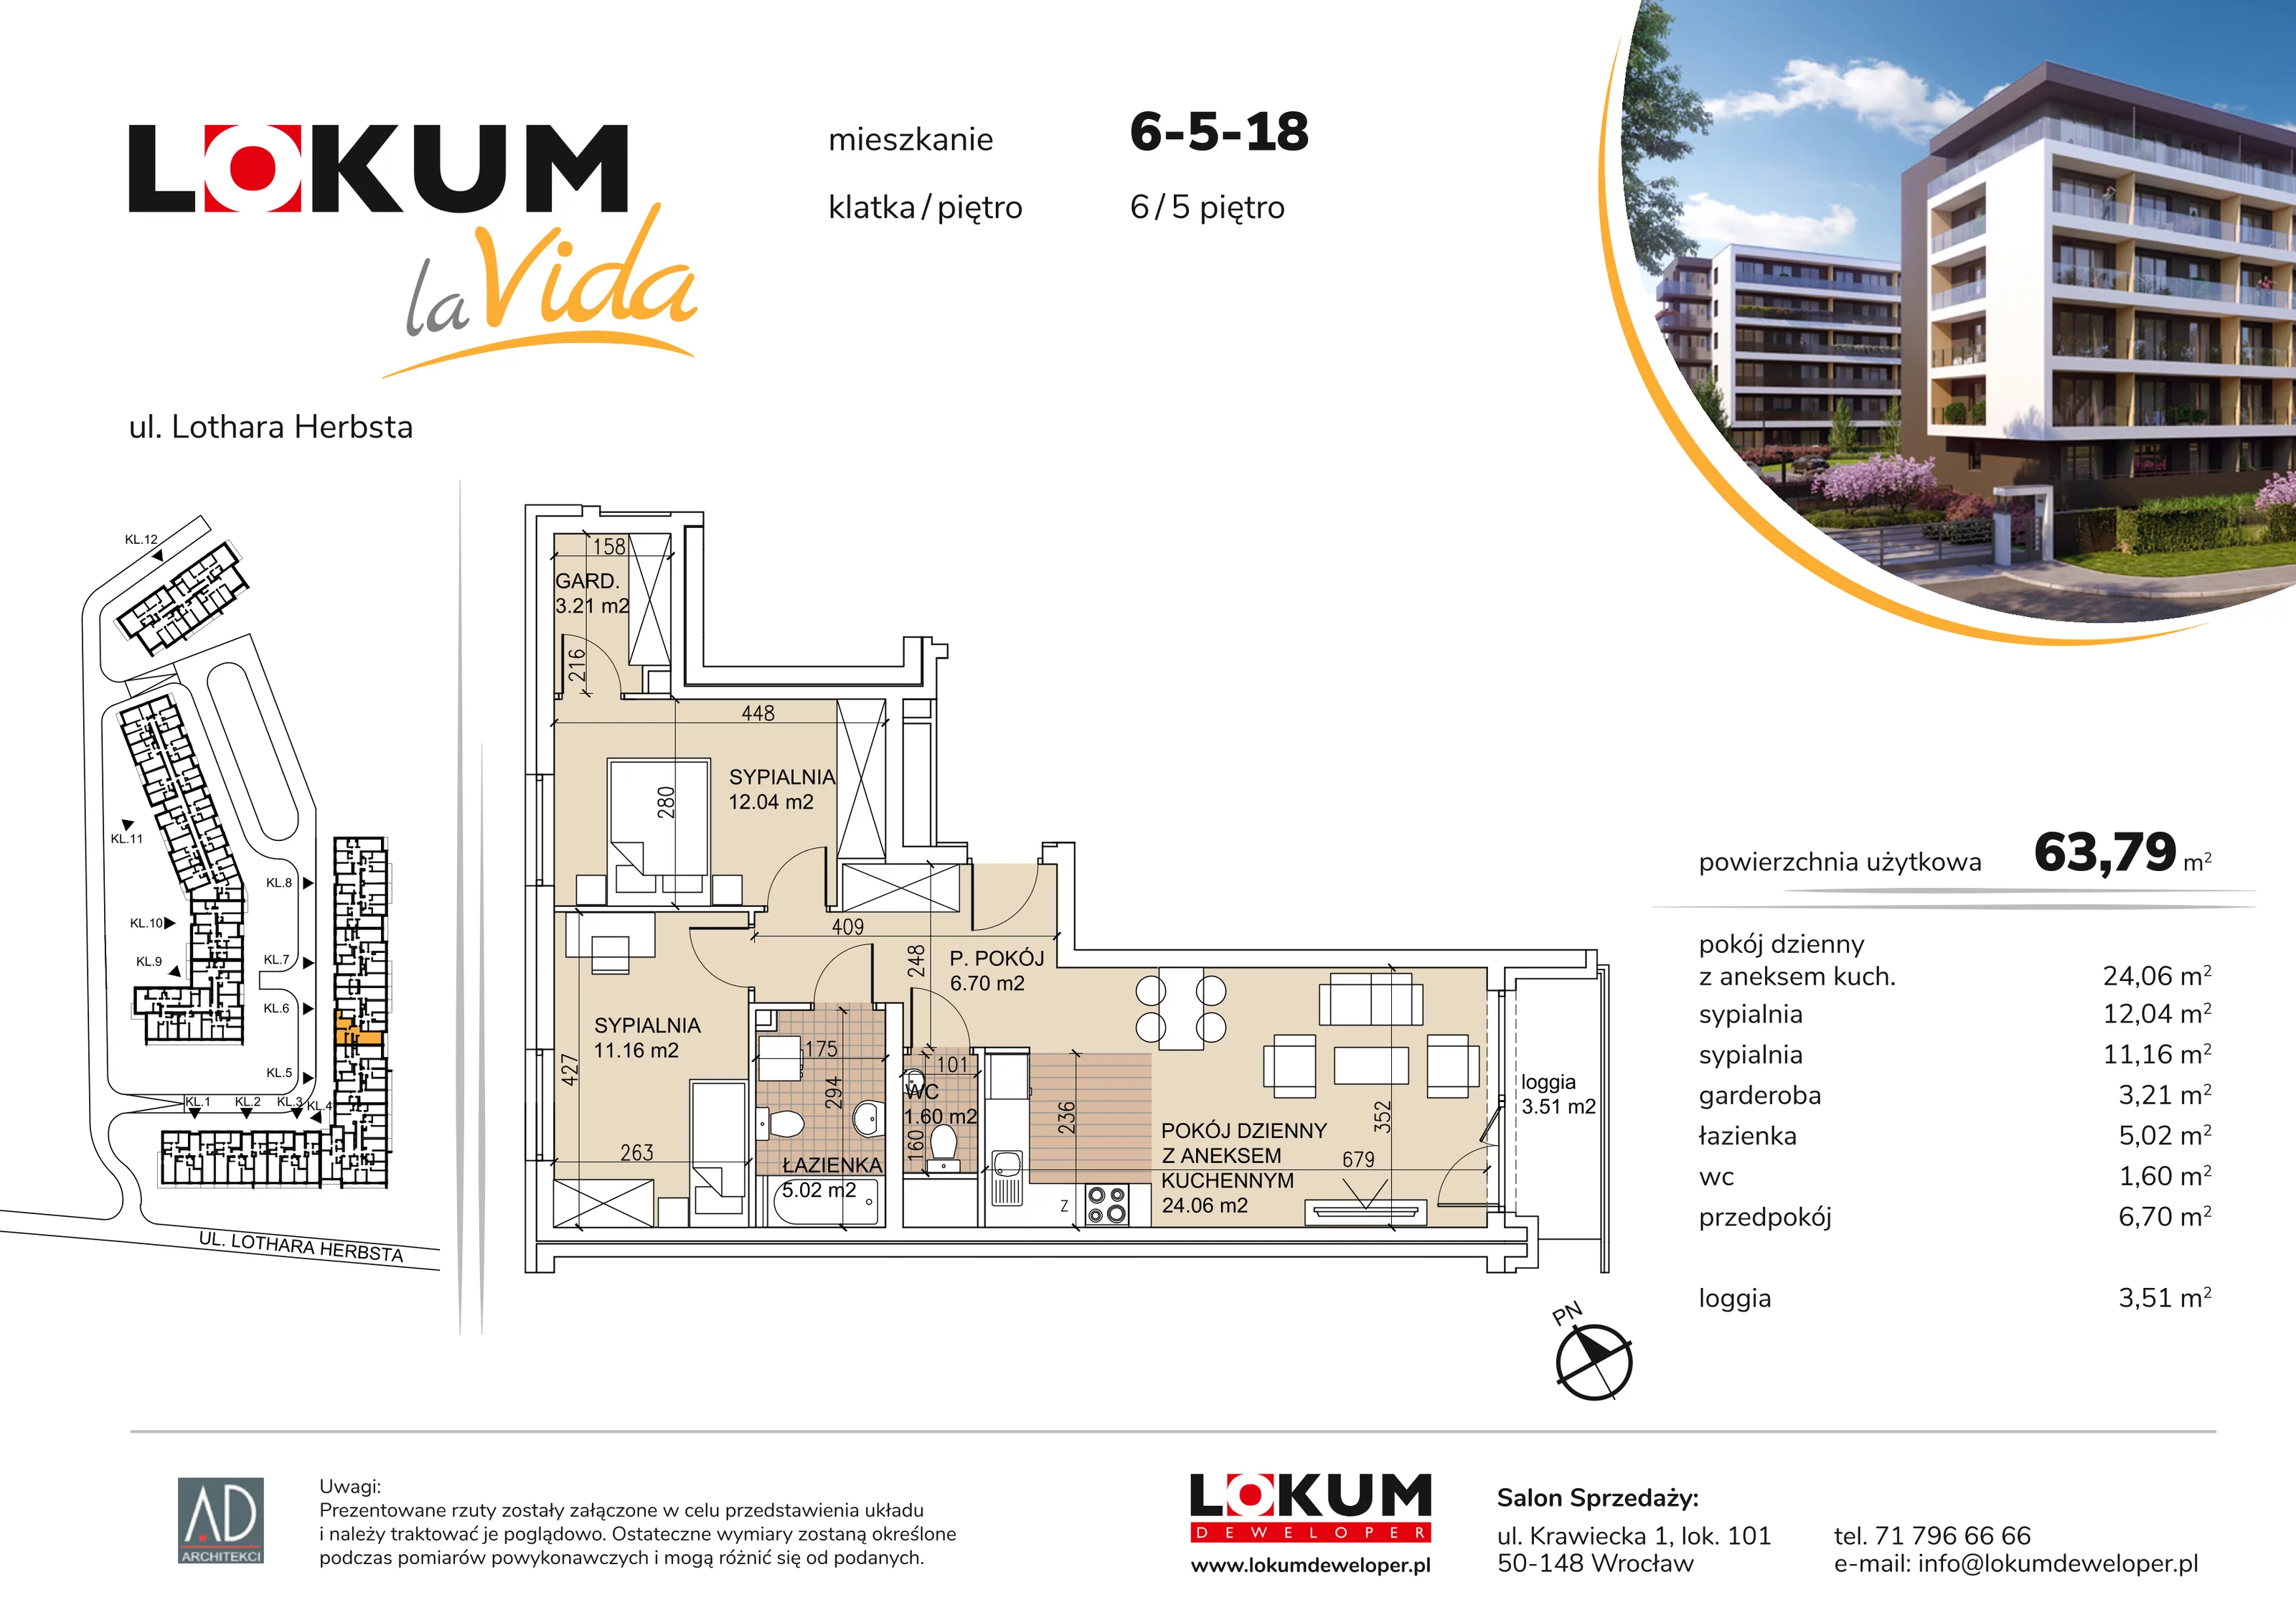 Mieszkanie 63,79 m², piętro 5, oferta nr 6-5-18, Lokum la Vida, Wrocław, Sołtysowice, ul. Lothara Herbsta